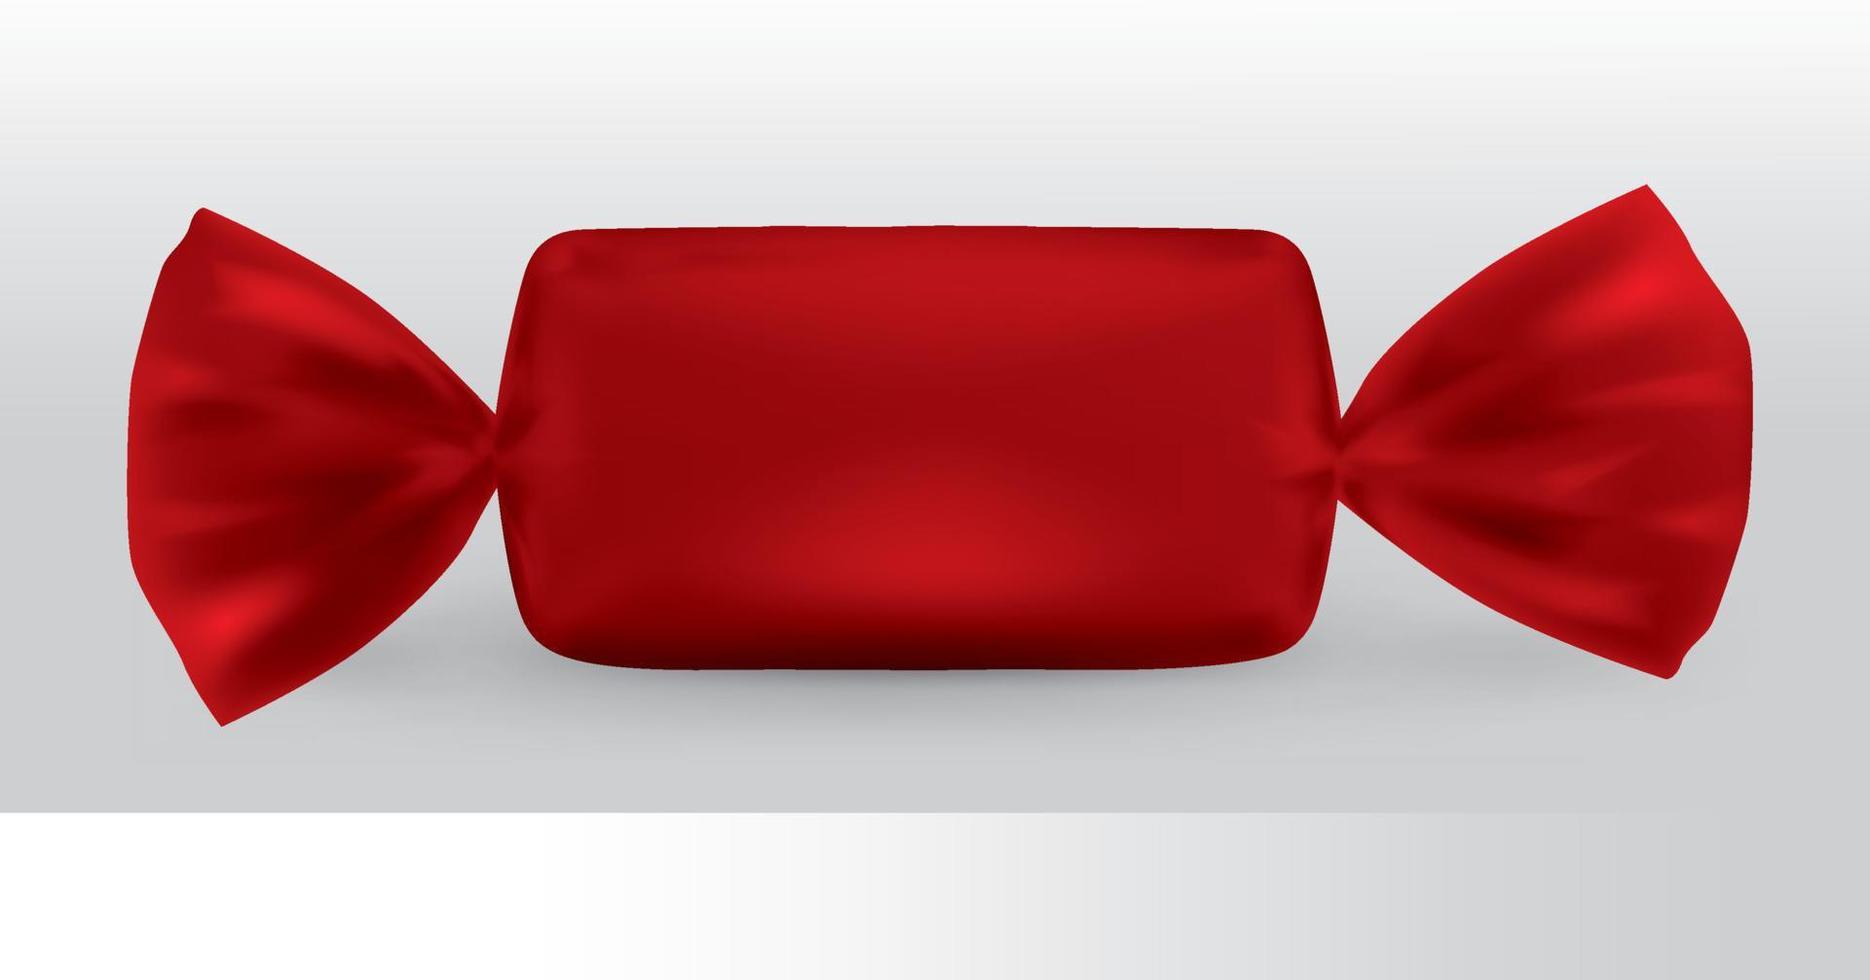 pacote de doces retangular vermelho para novo design, isolamento do produto em um fundo branco com reflexos e cor vermelha de solda. vetor